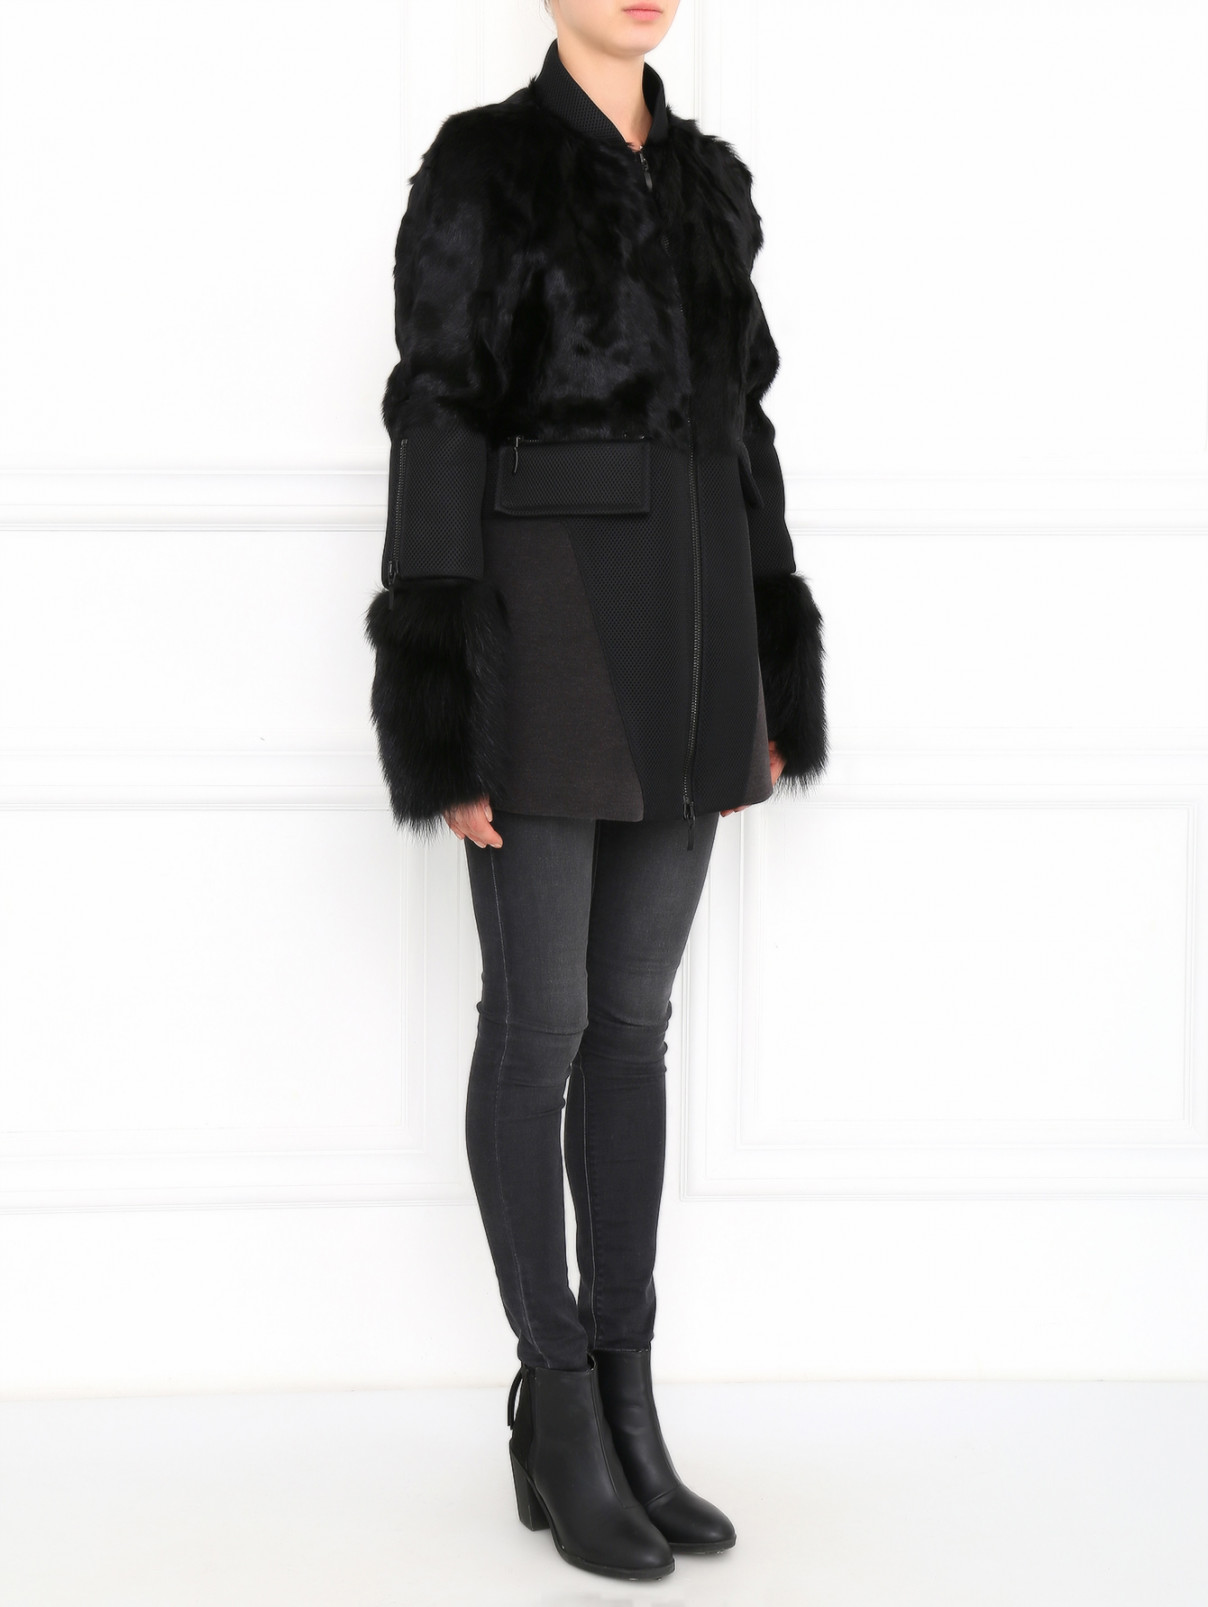 Пальто из хлопка с меховыми вставками Fabio Gavazzi  –  Модель Общий вид  – Цвет:  Черный